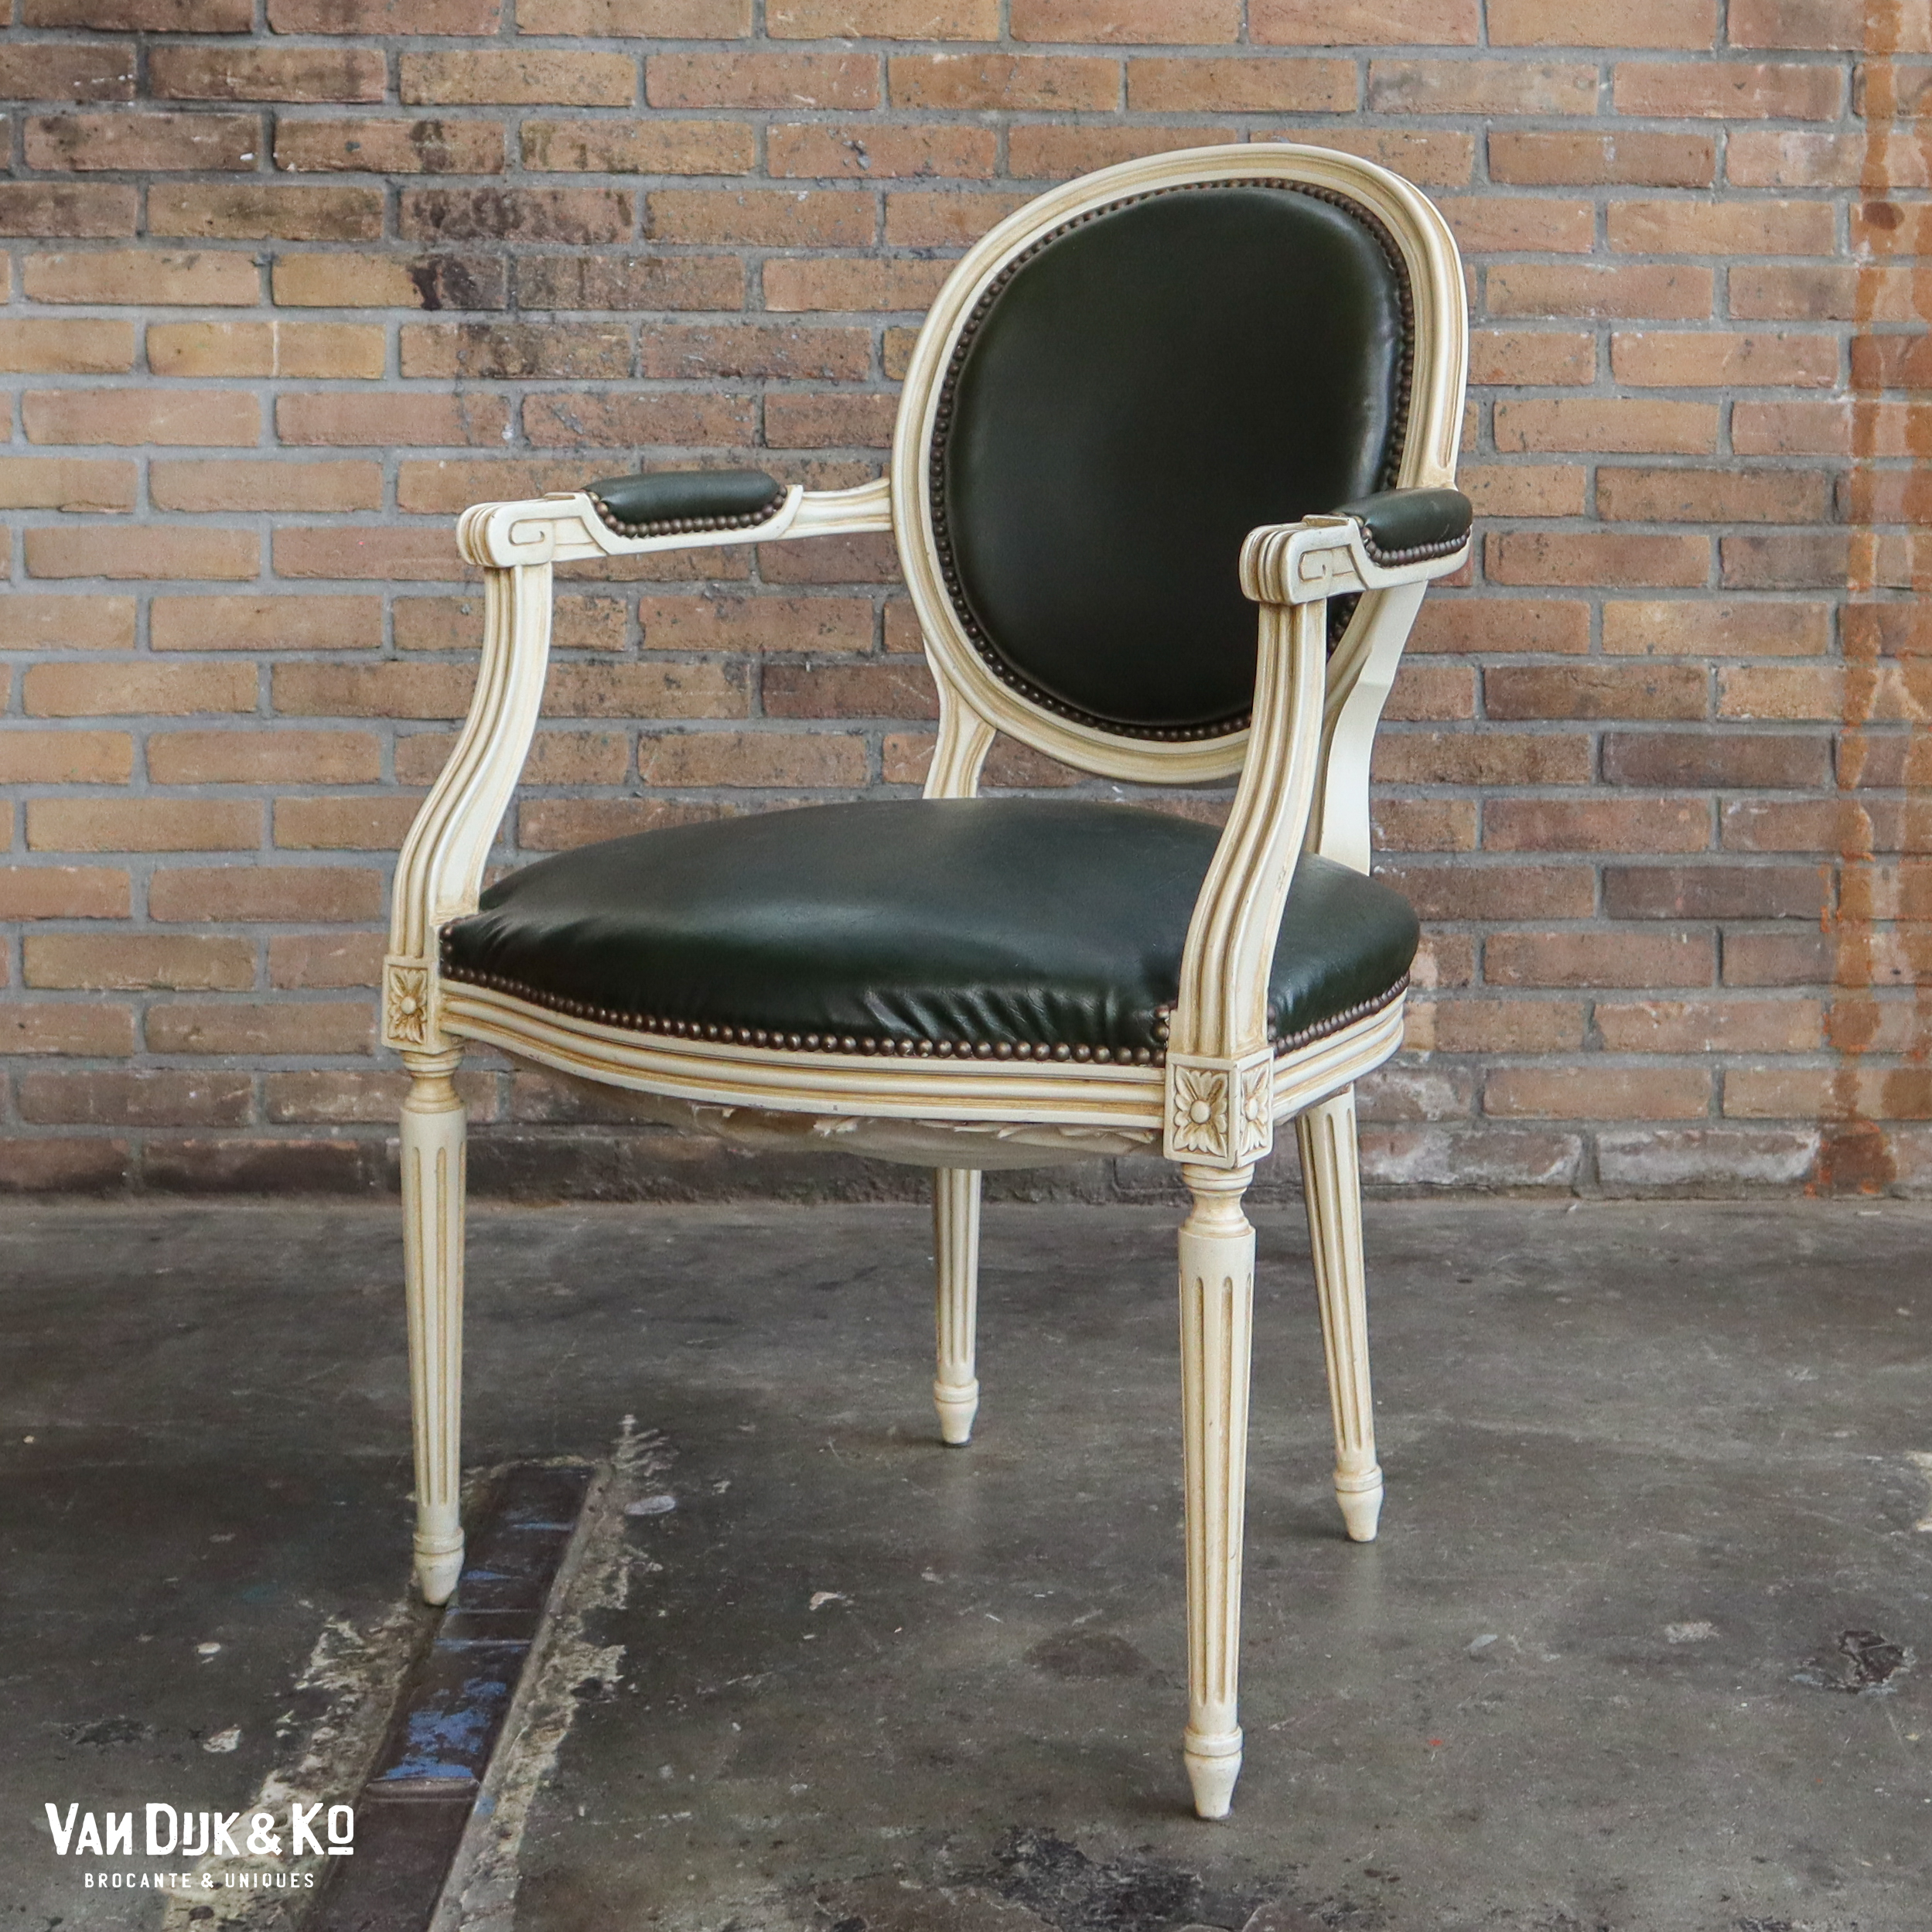 eigendom Kom langs om het te weten Worden Vintage Louis XV stoel » Van Dijk & Ko